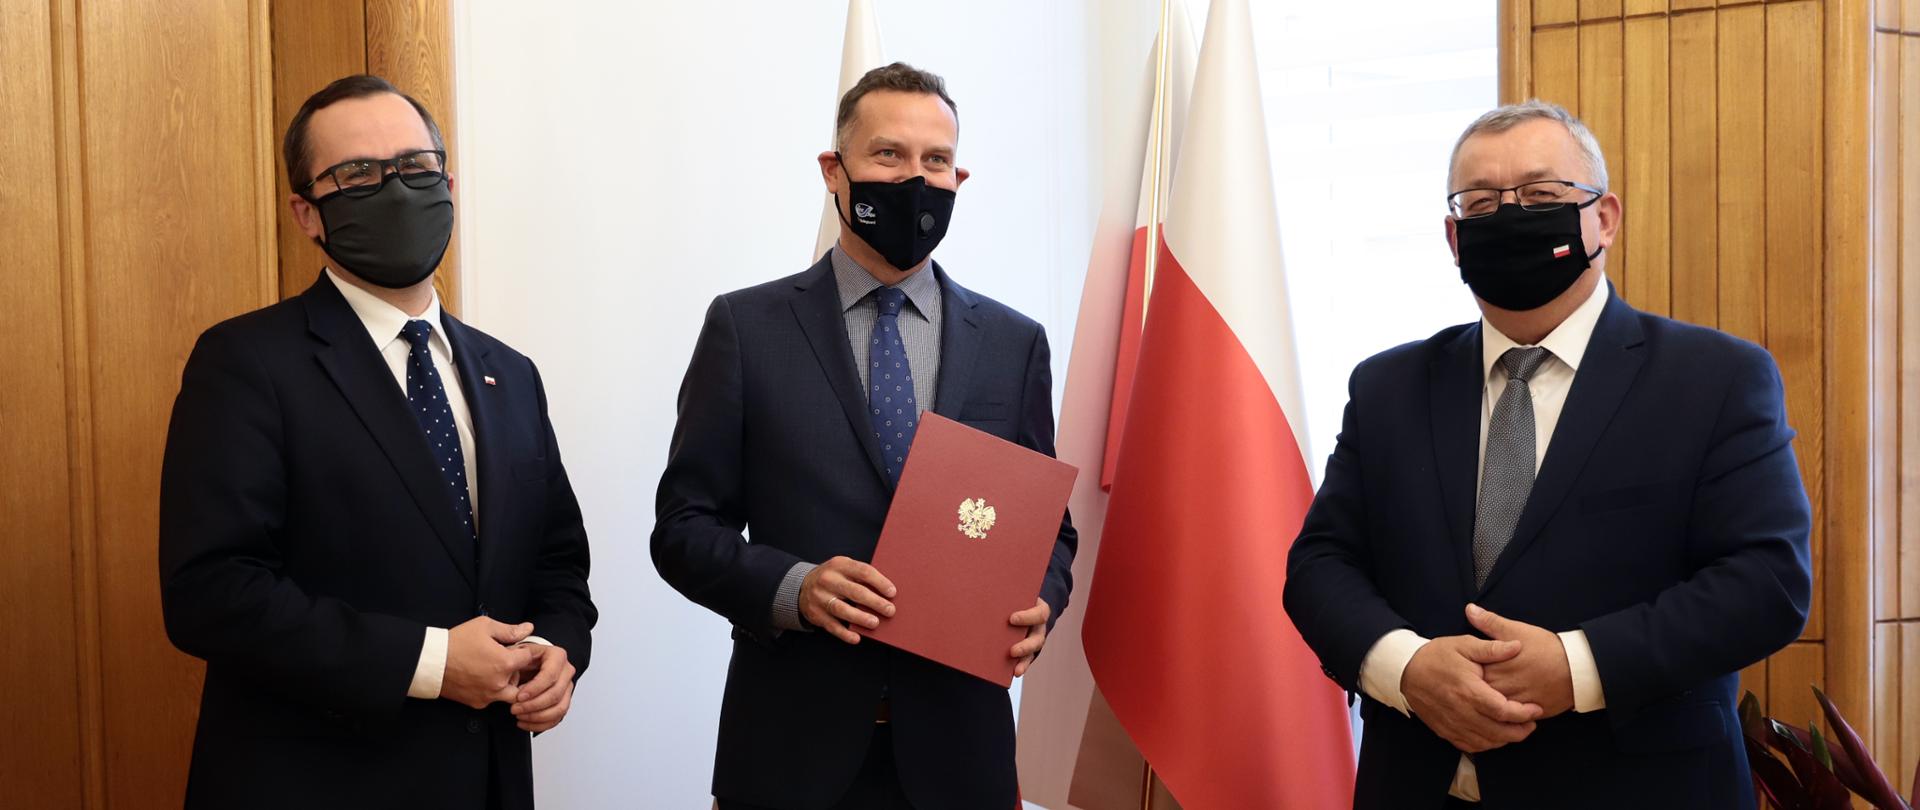 Minister Infrastruktury powołał nowego prezesa Przedsiębiorstwa Państwowego „Porty Lotnicze”. Został nim Stanisław Wojtera